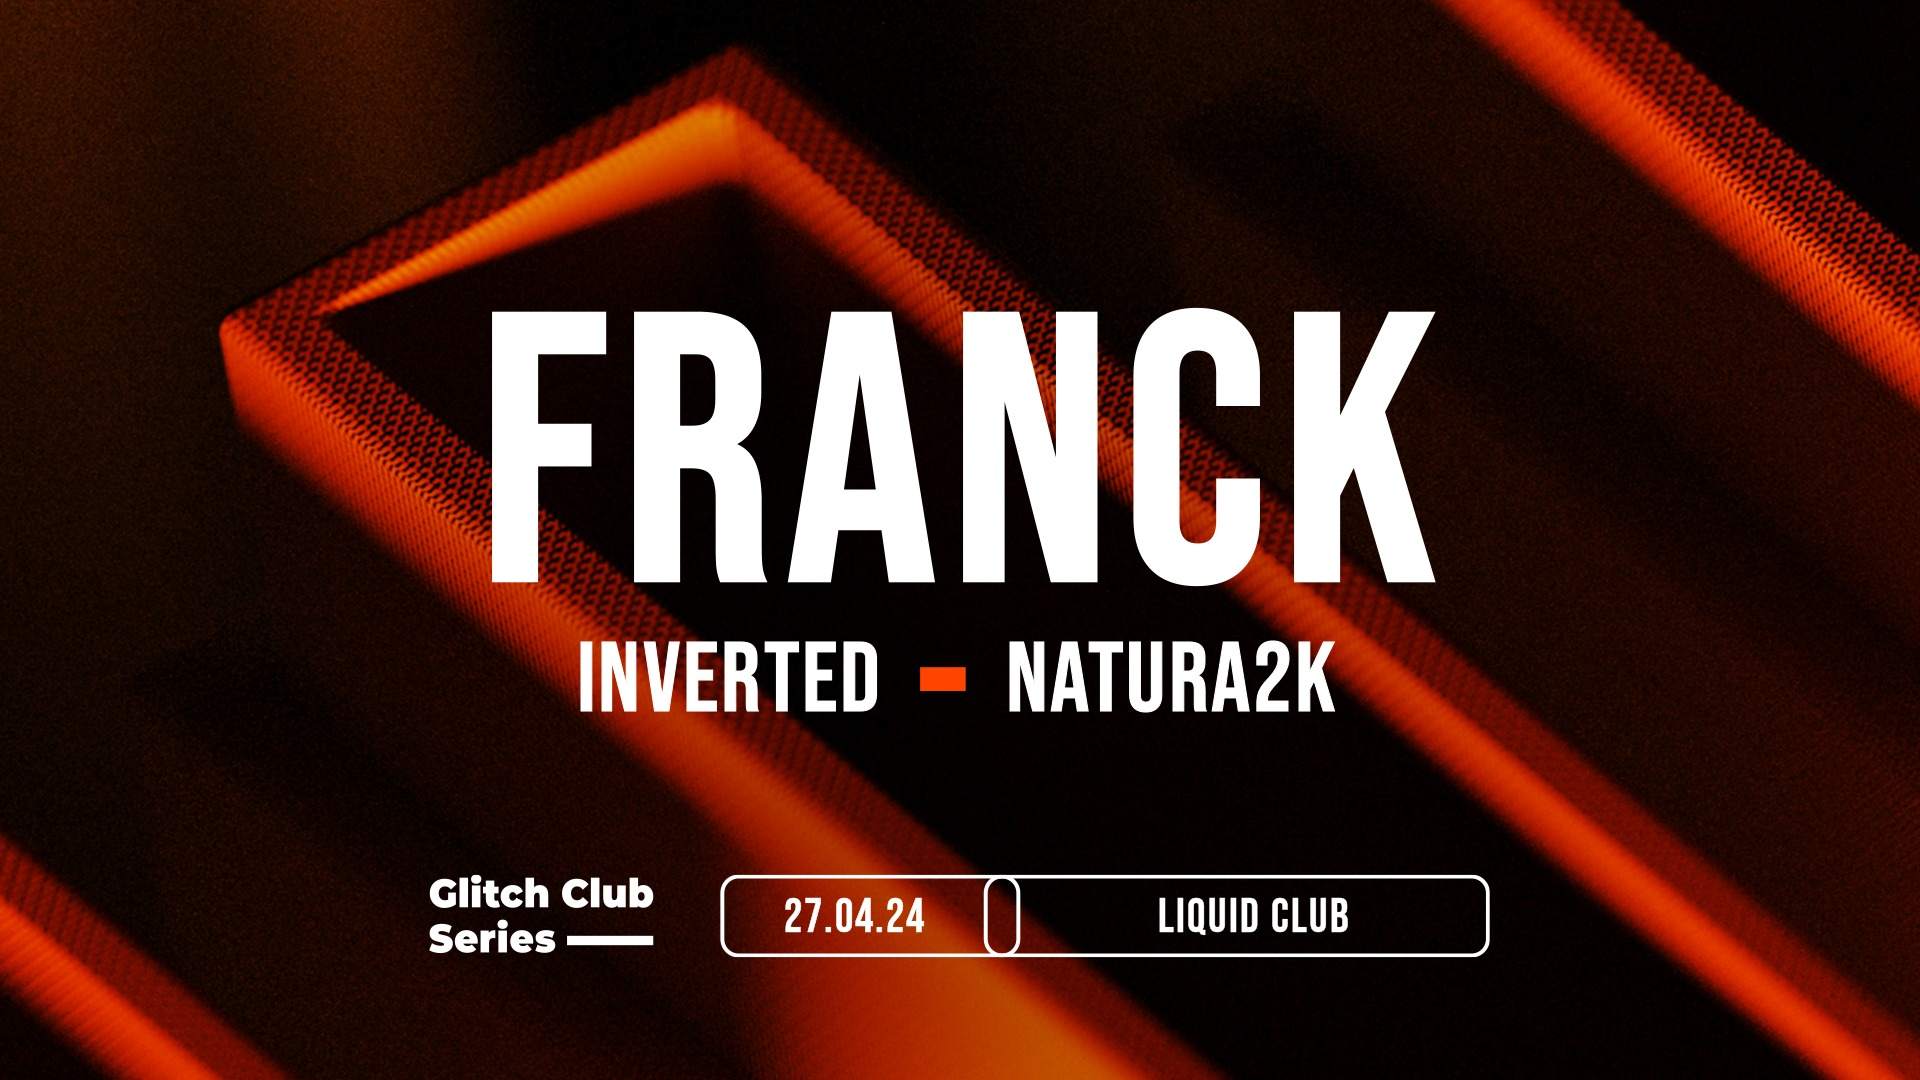 Glitch Club Series: Franck - Página frontal